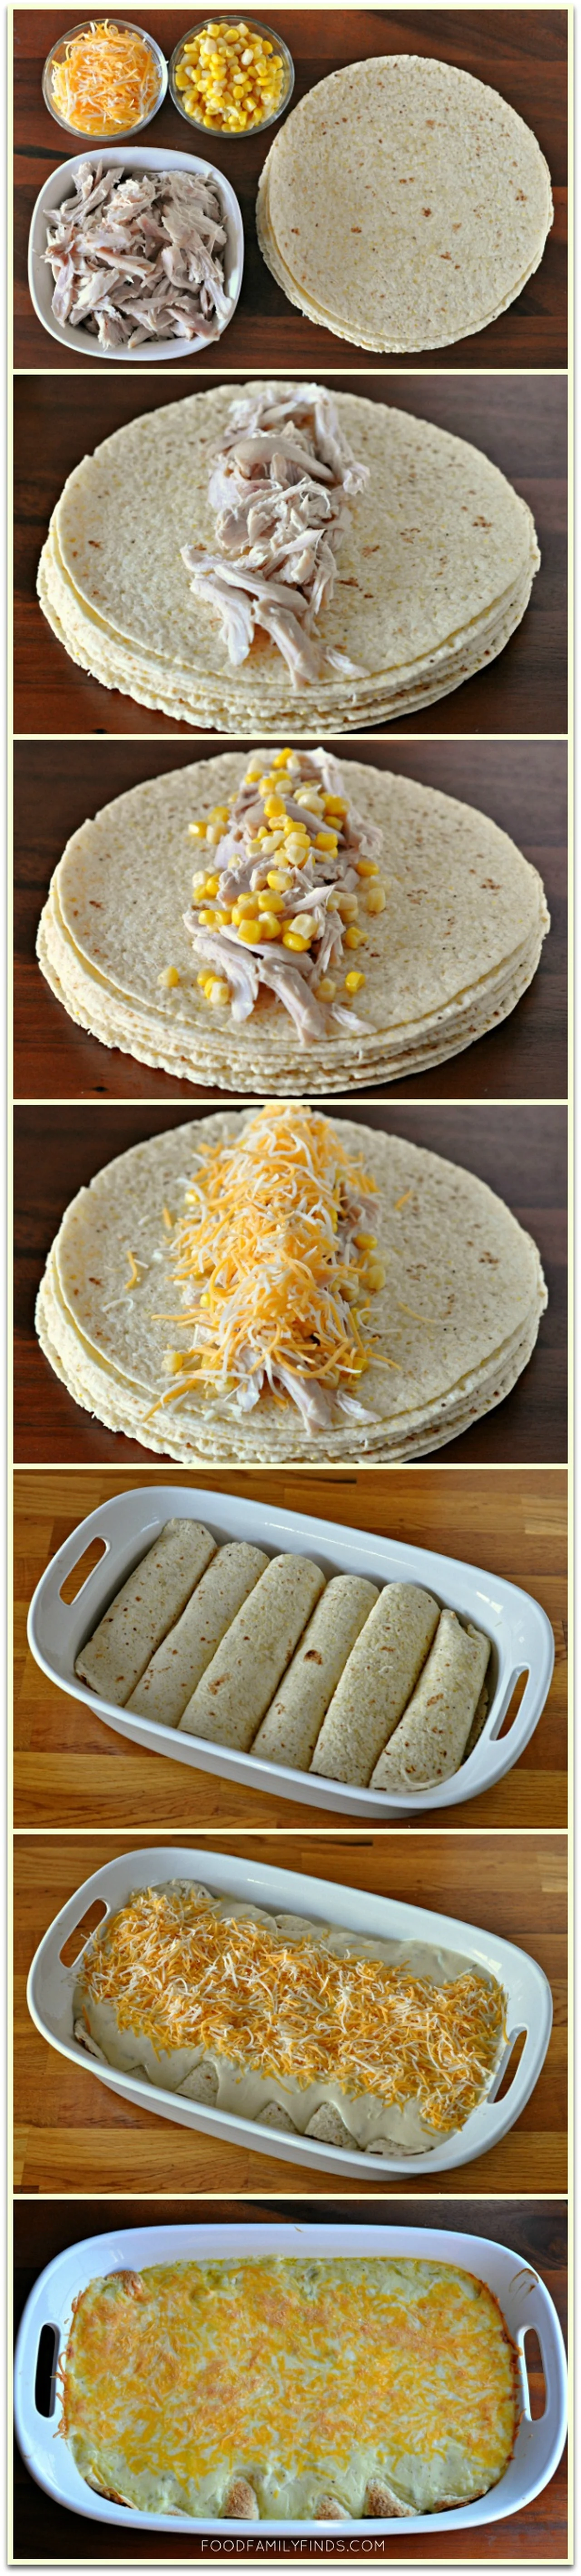 Zapiekane tortille z kurczakiem - Enchiladas